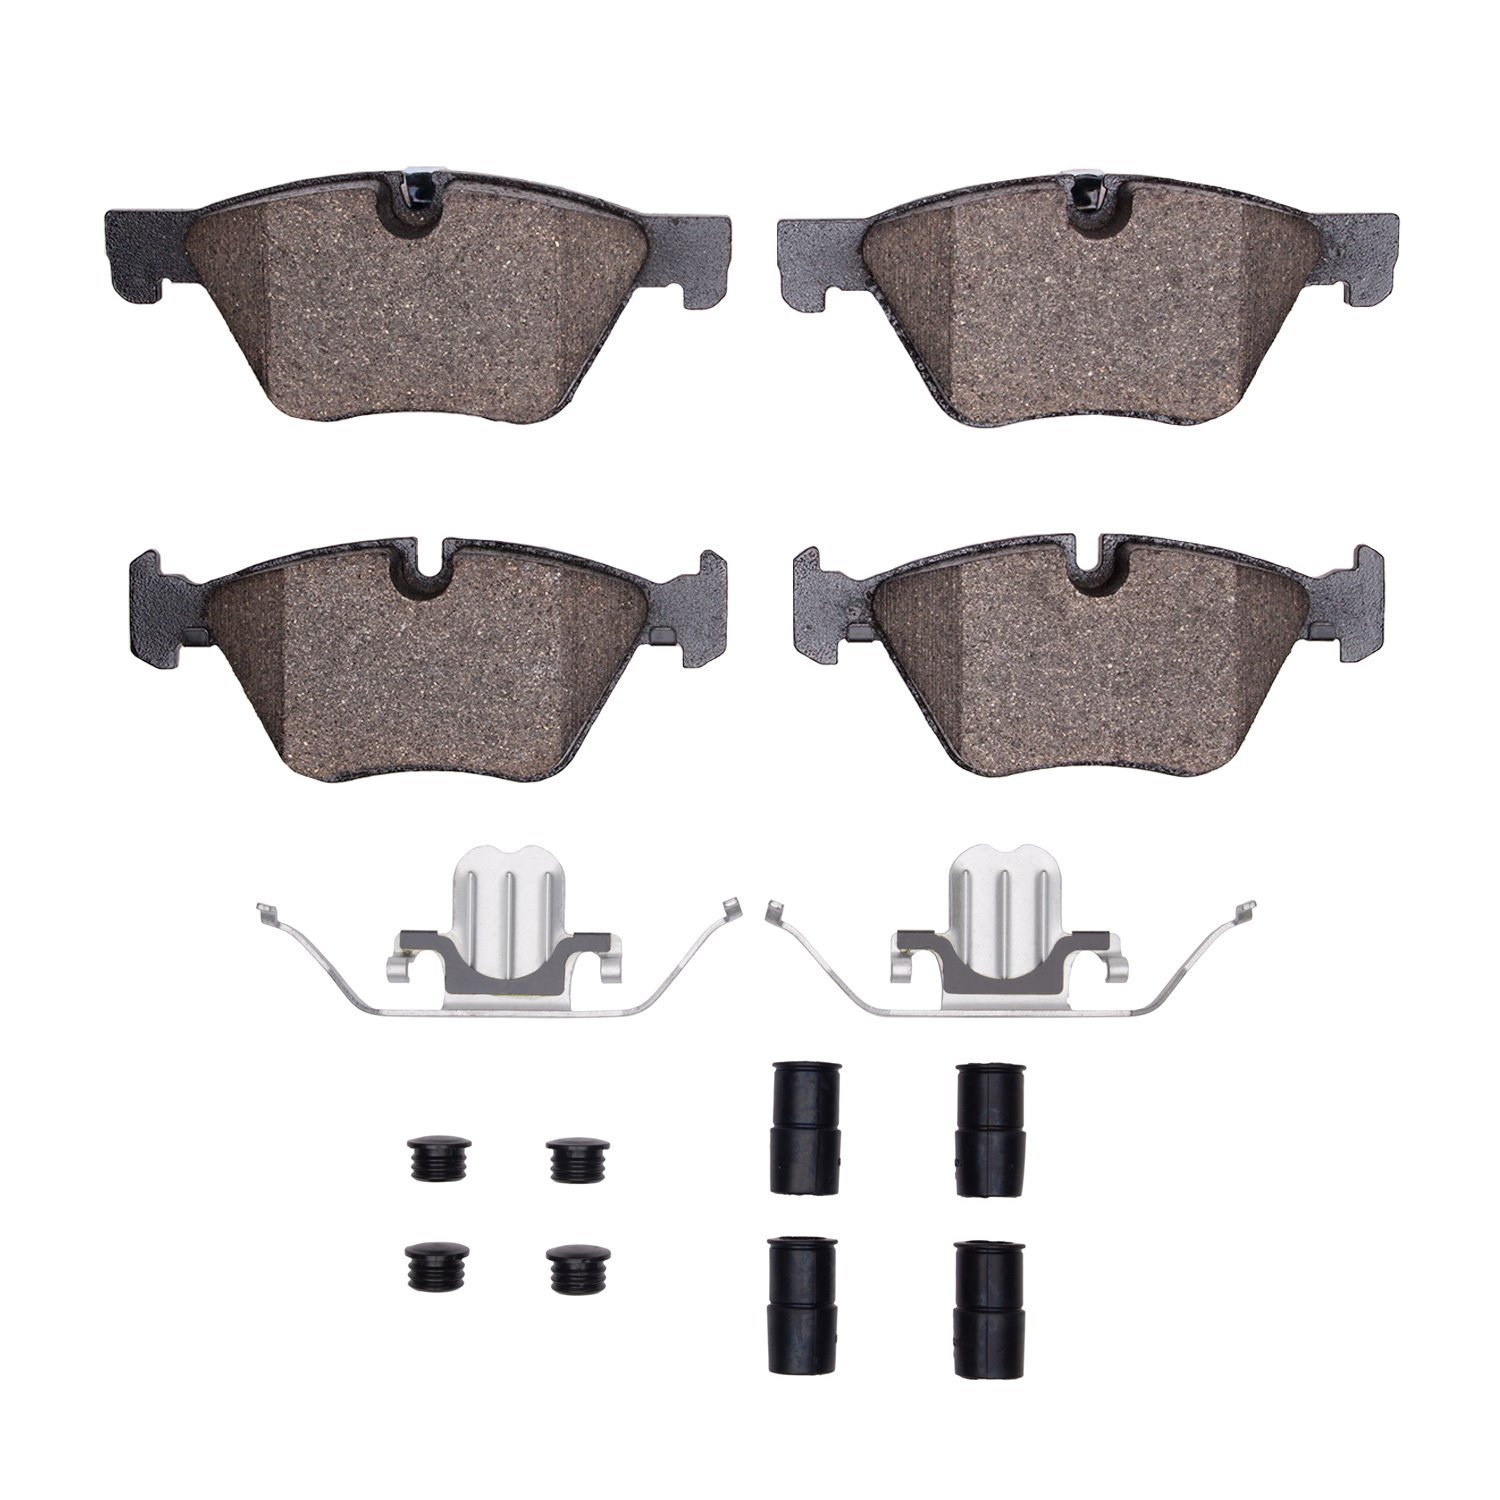 Euro Ceramic Brake Pads & Hardware Kit, 2011-2016 BMW, Position: Front